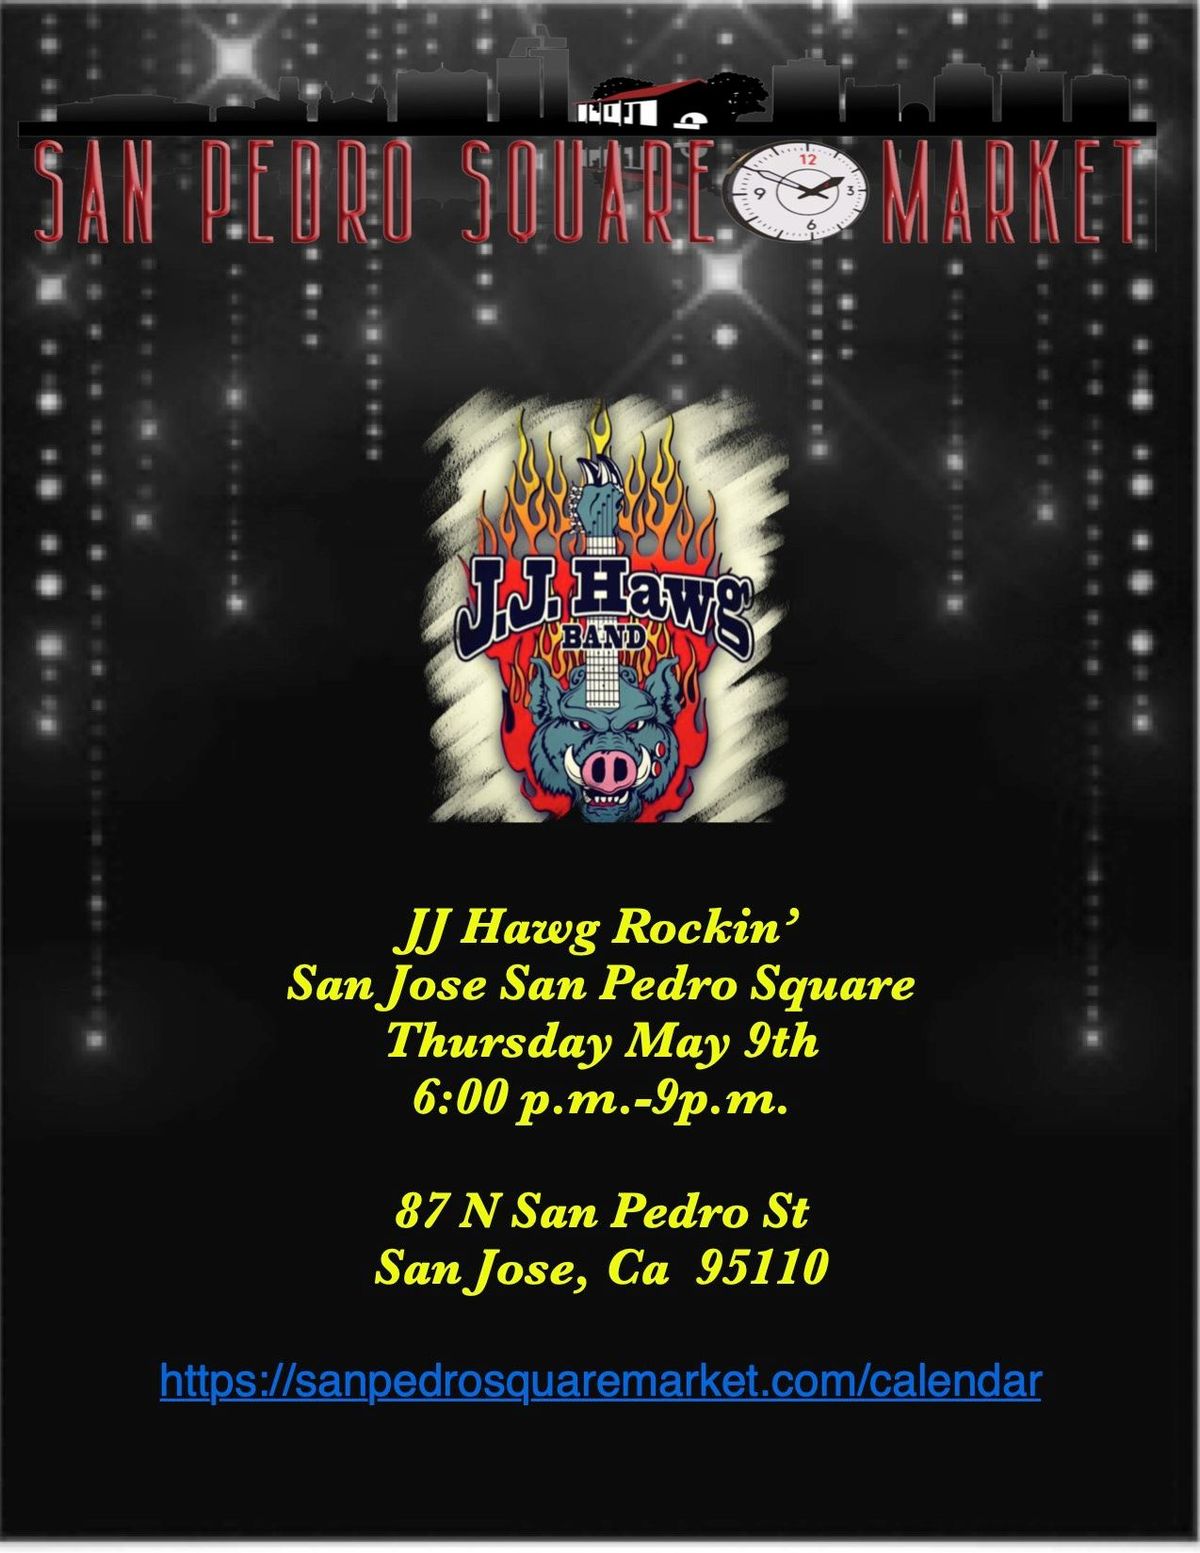 JJ Hawg Band at San Pedro Square San Jose Thursday!